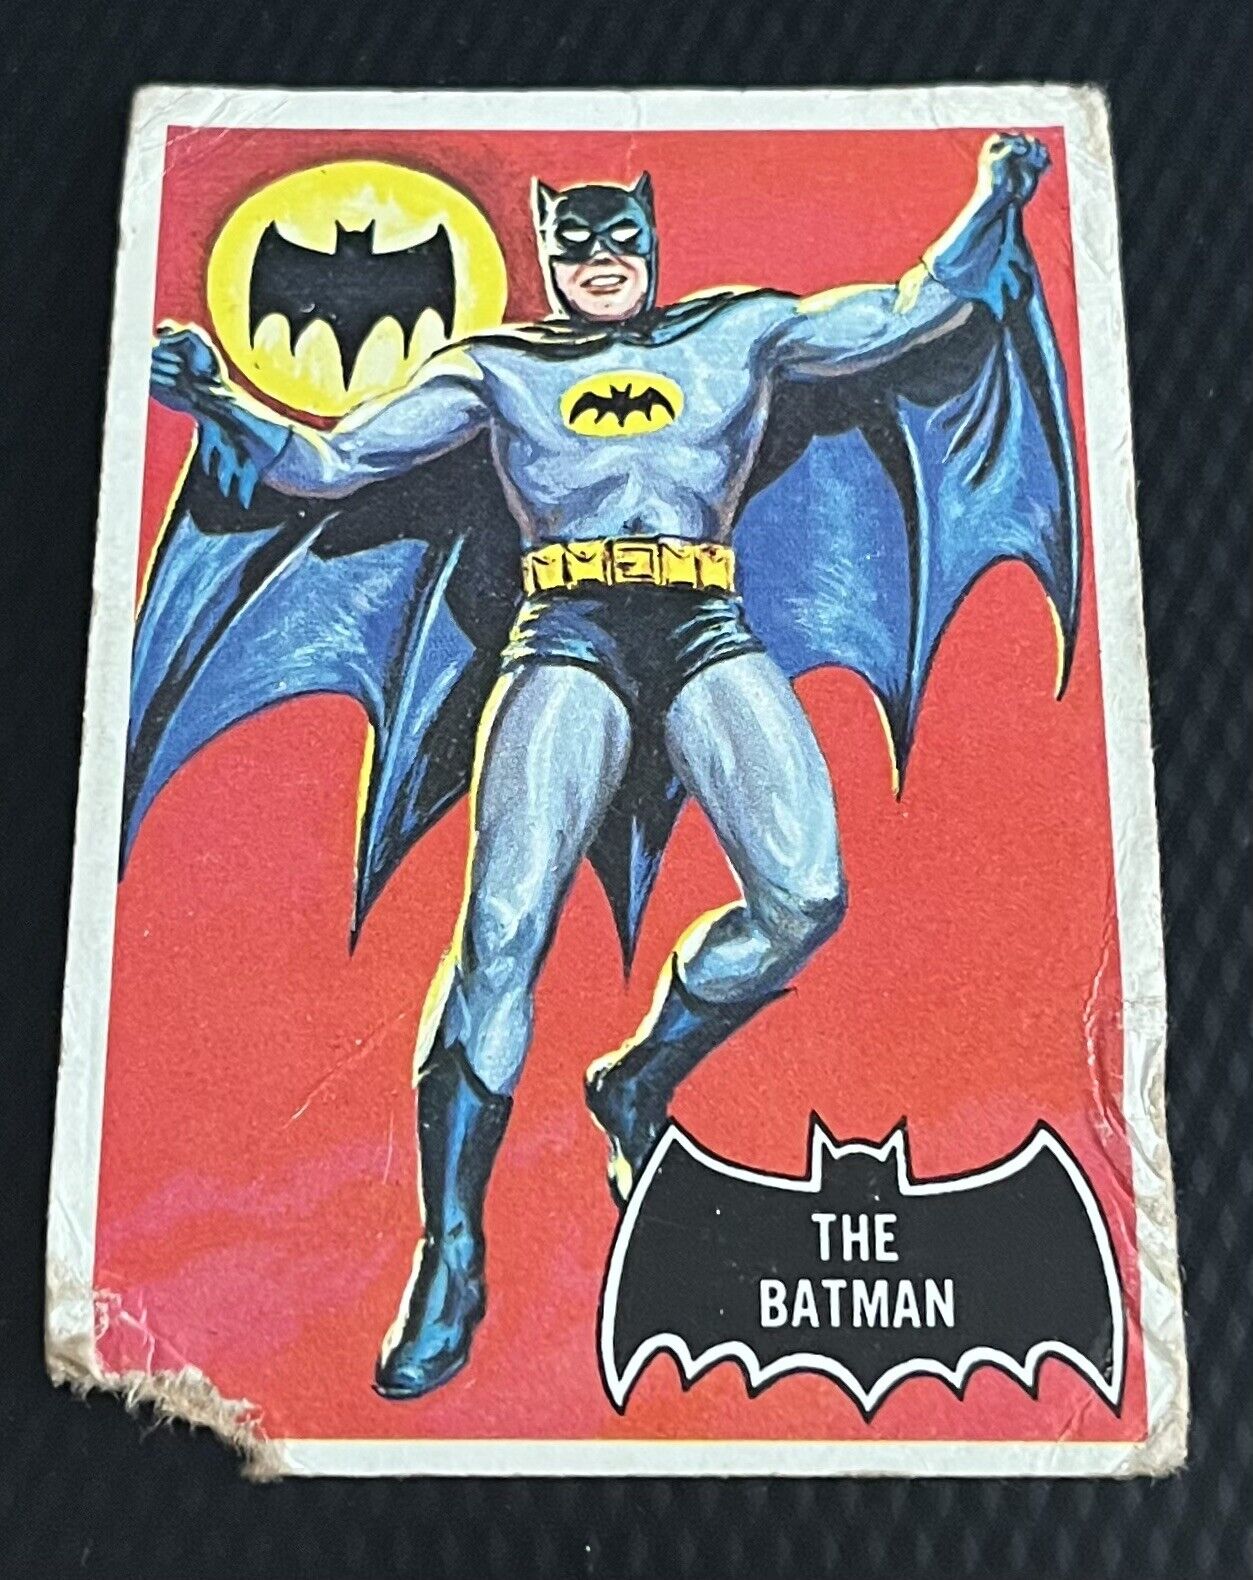 1966 Topps Batman Black Bat Rookie Card #1 - Very Low Grade Filler Card